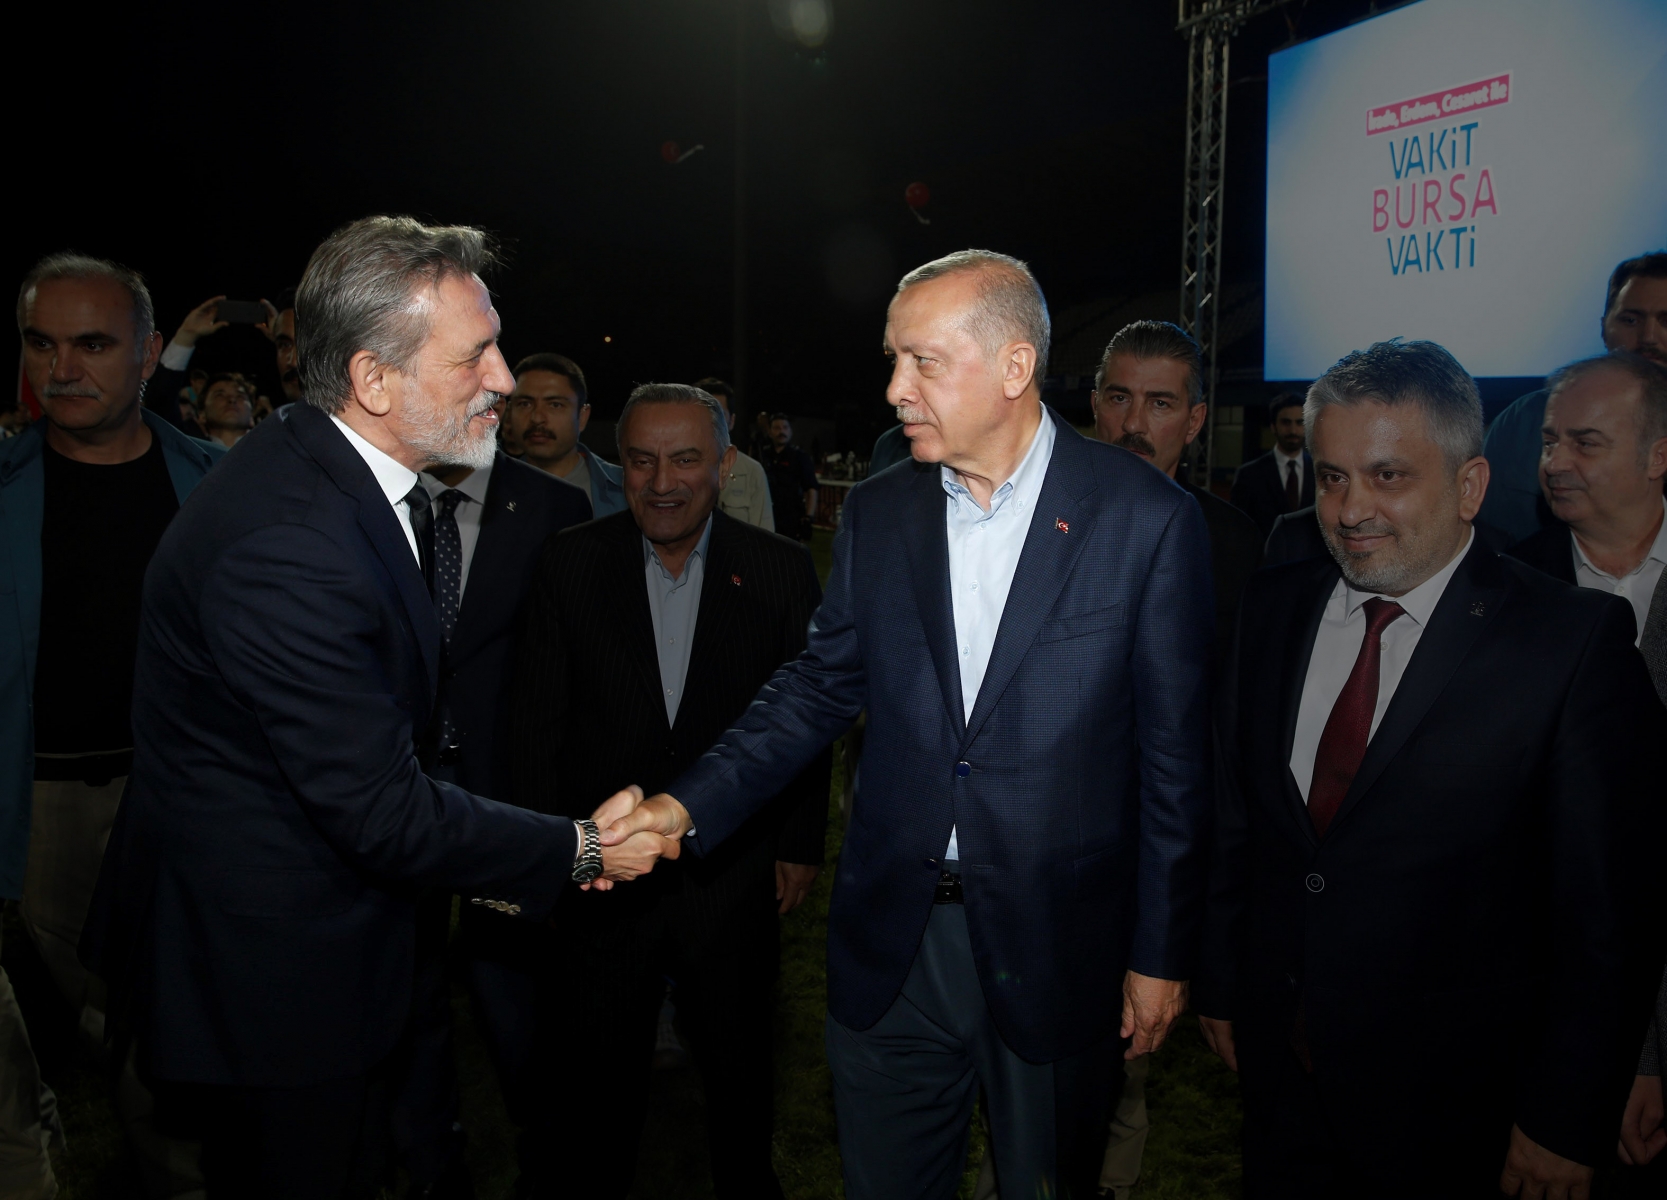 Cumhurbaşkanı Recep Tayyip Erdoğan’ın Bursa ziyaretinde övgülerle bahsettiği ve genişletilmesi
yönünde talimat verdiği TEKNOSAB  Projesi, sadece Bursa’nın değil, Türkiye’nin de yeni vizyonunu
yansıtan önemli projeler arasında yer alıyor.